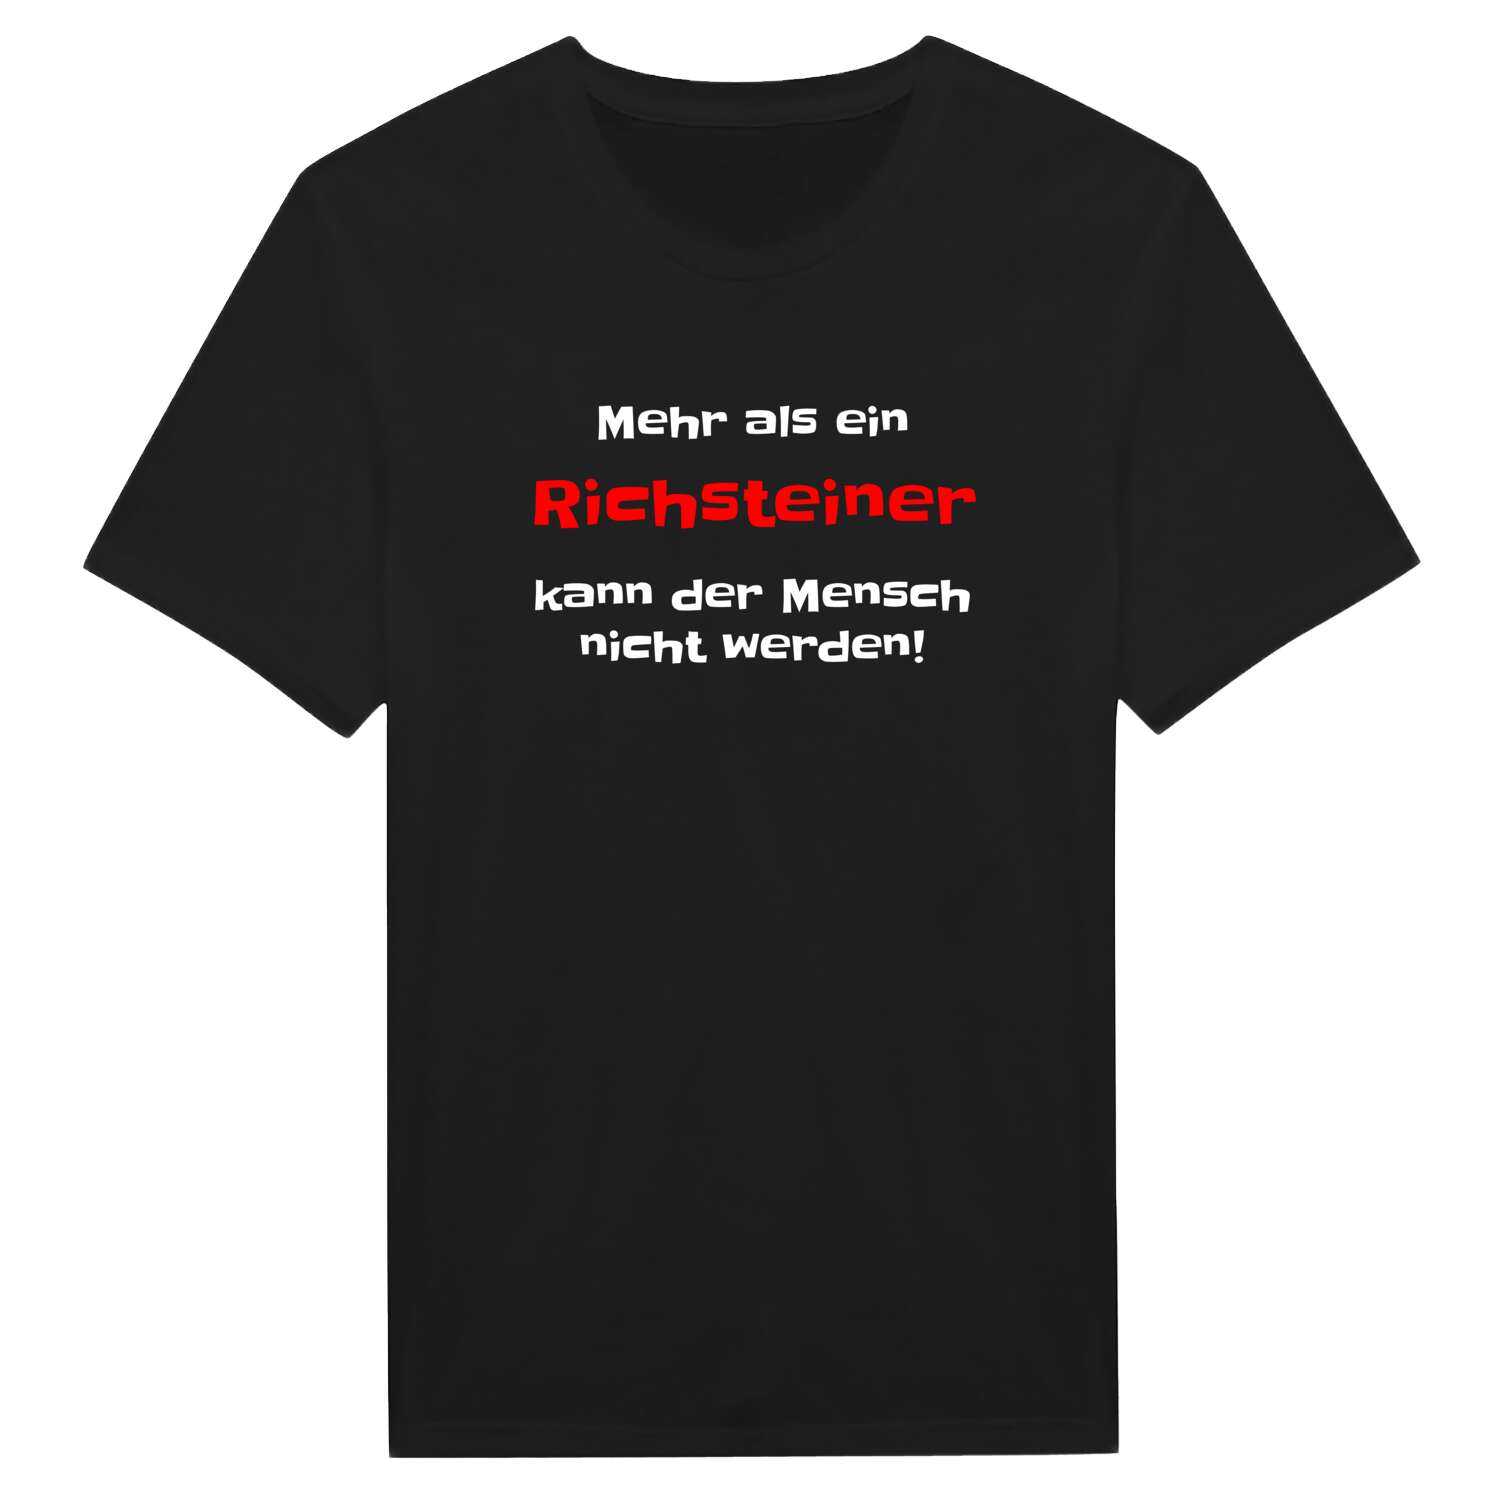 Richstein T-Shirt »Mehr als ein«